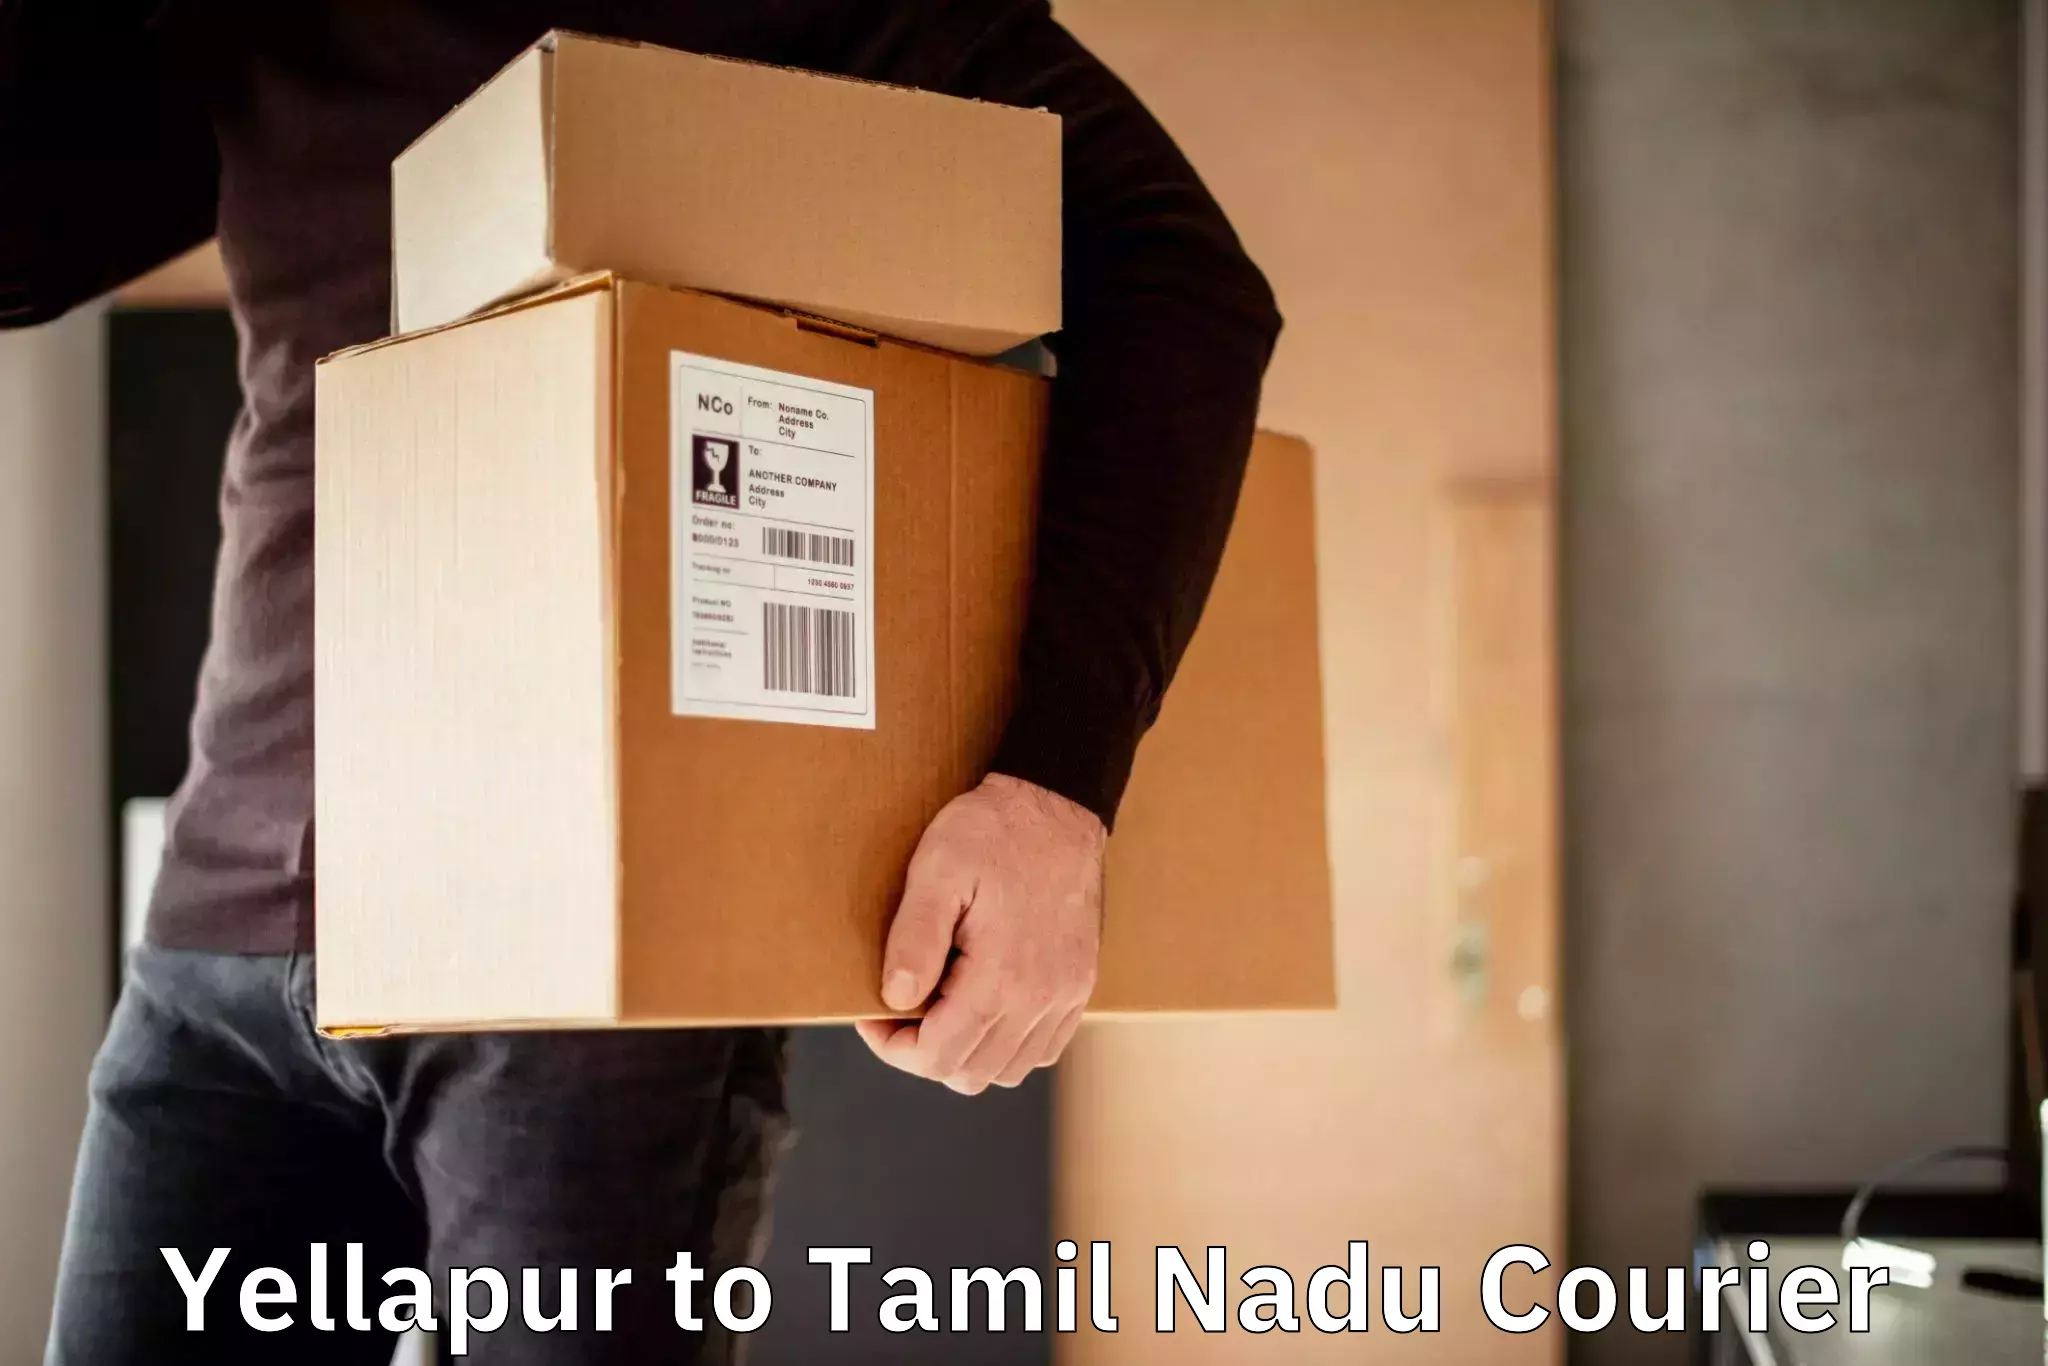 Simplified shipping solutions Yellapur to Thiruvadanai